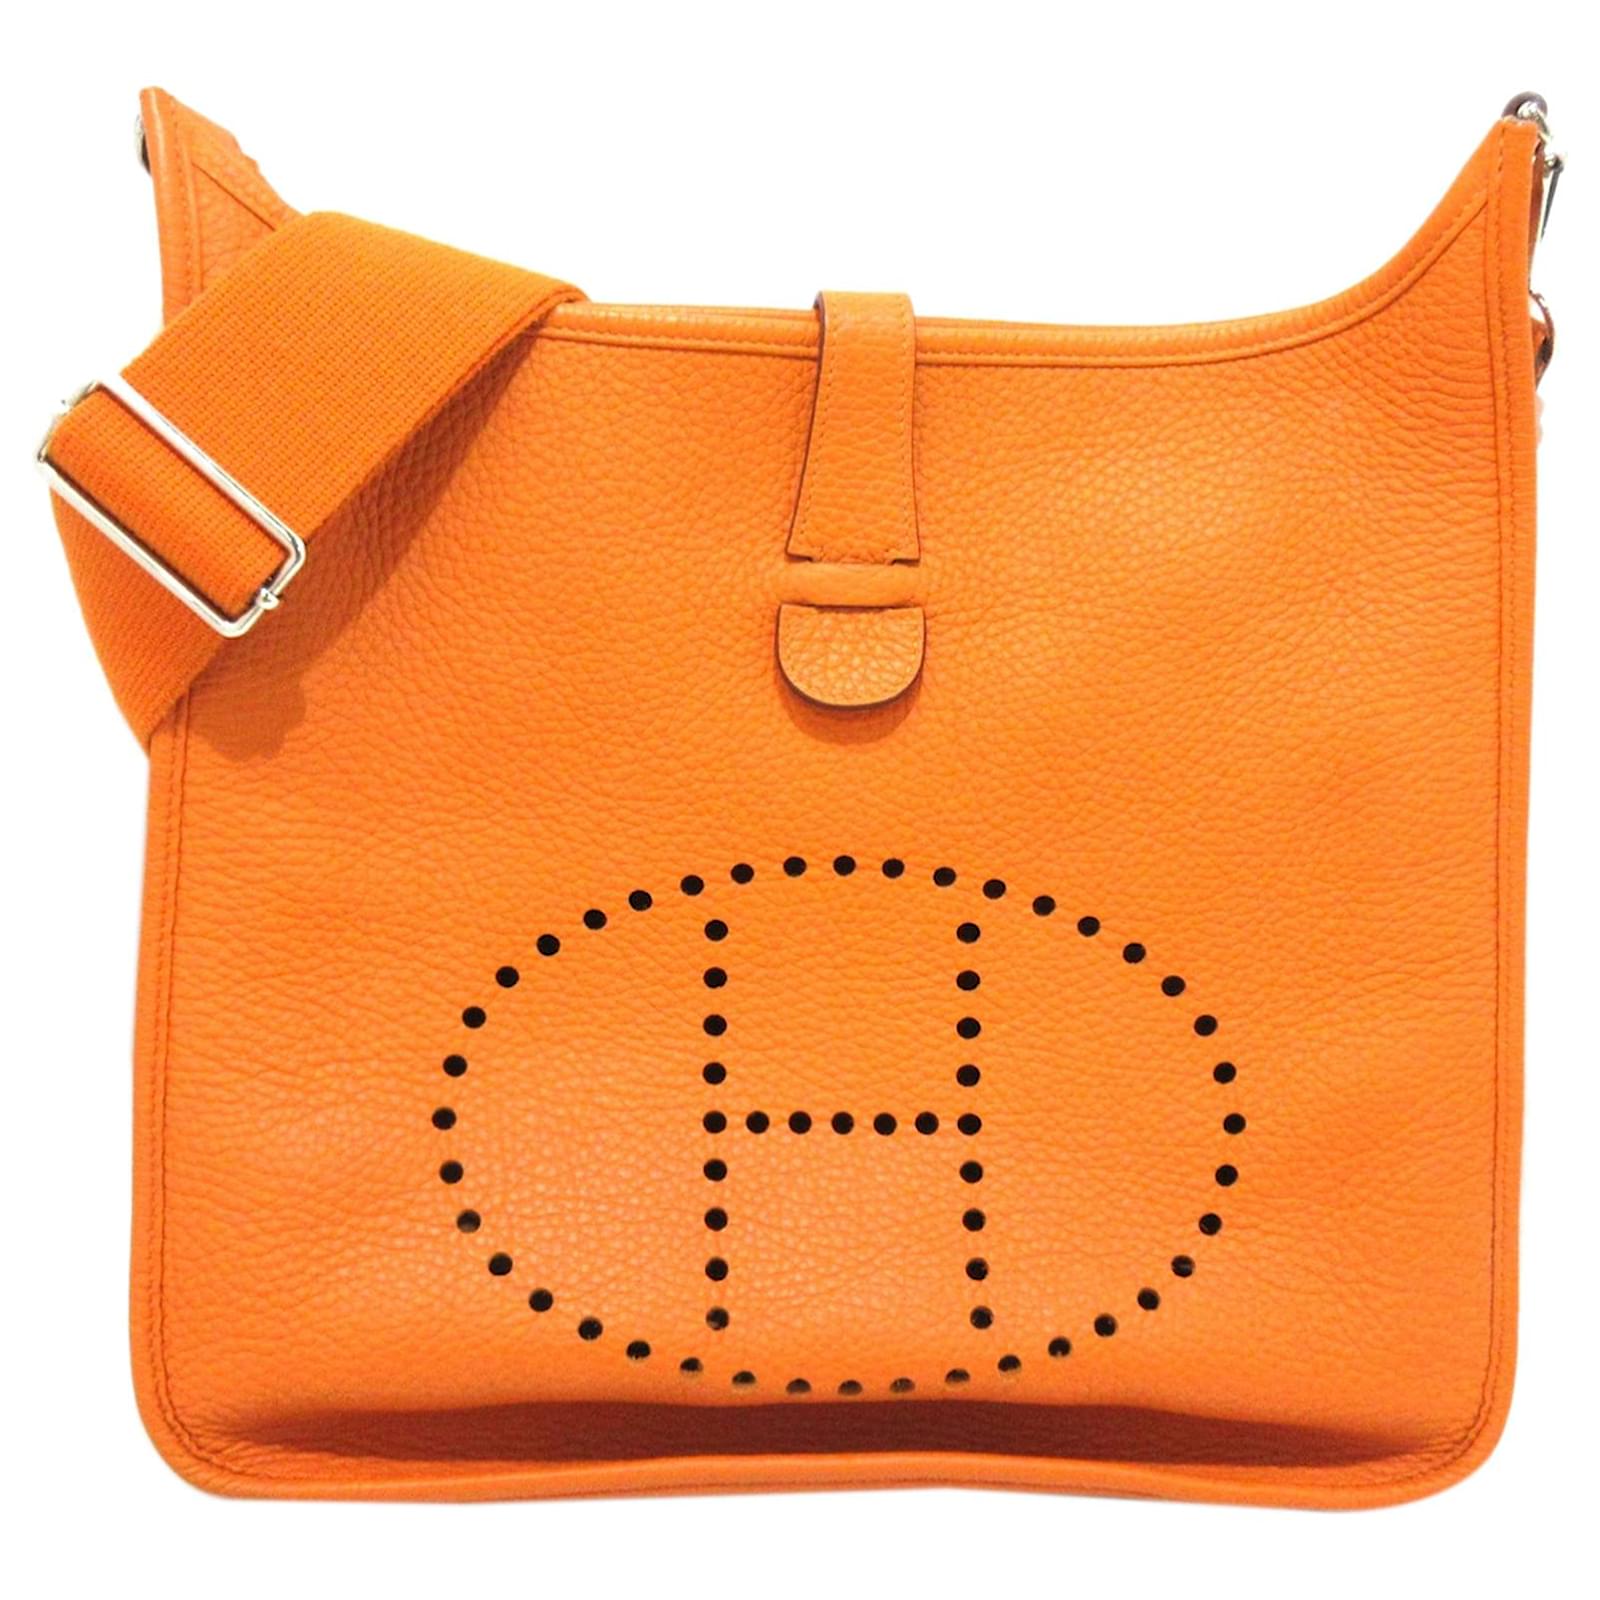 Hermès Hermes Orange Clemence Evelyne III 33 Leather Pony-style